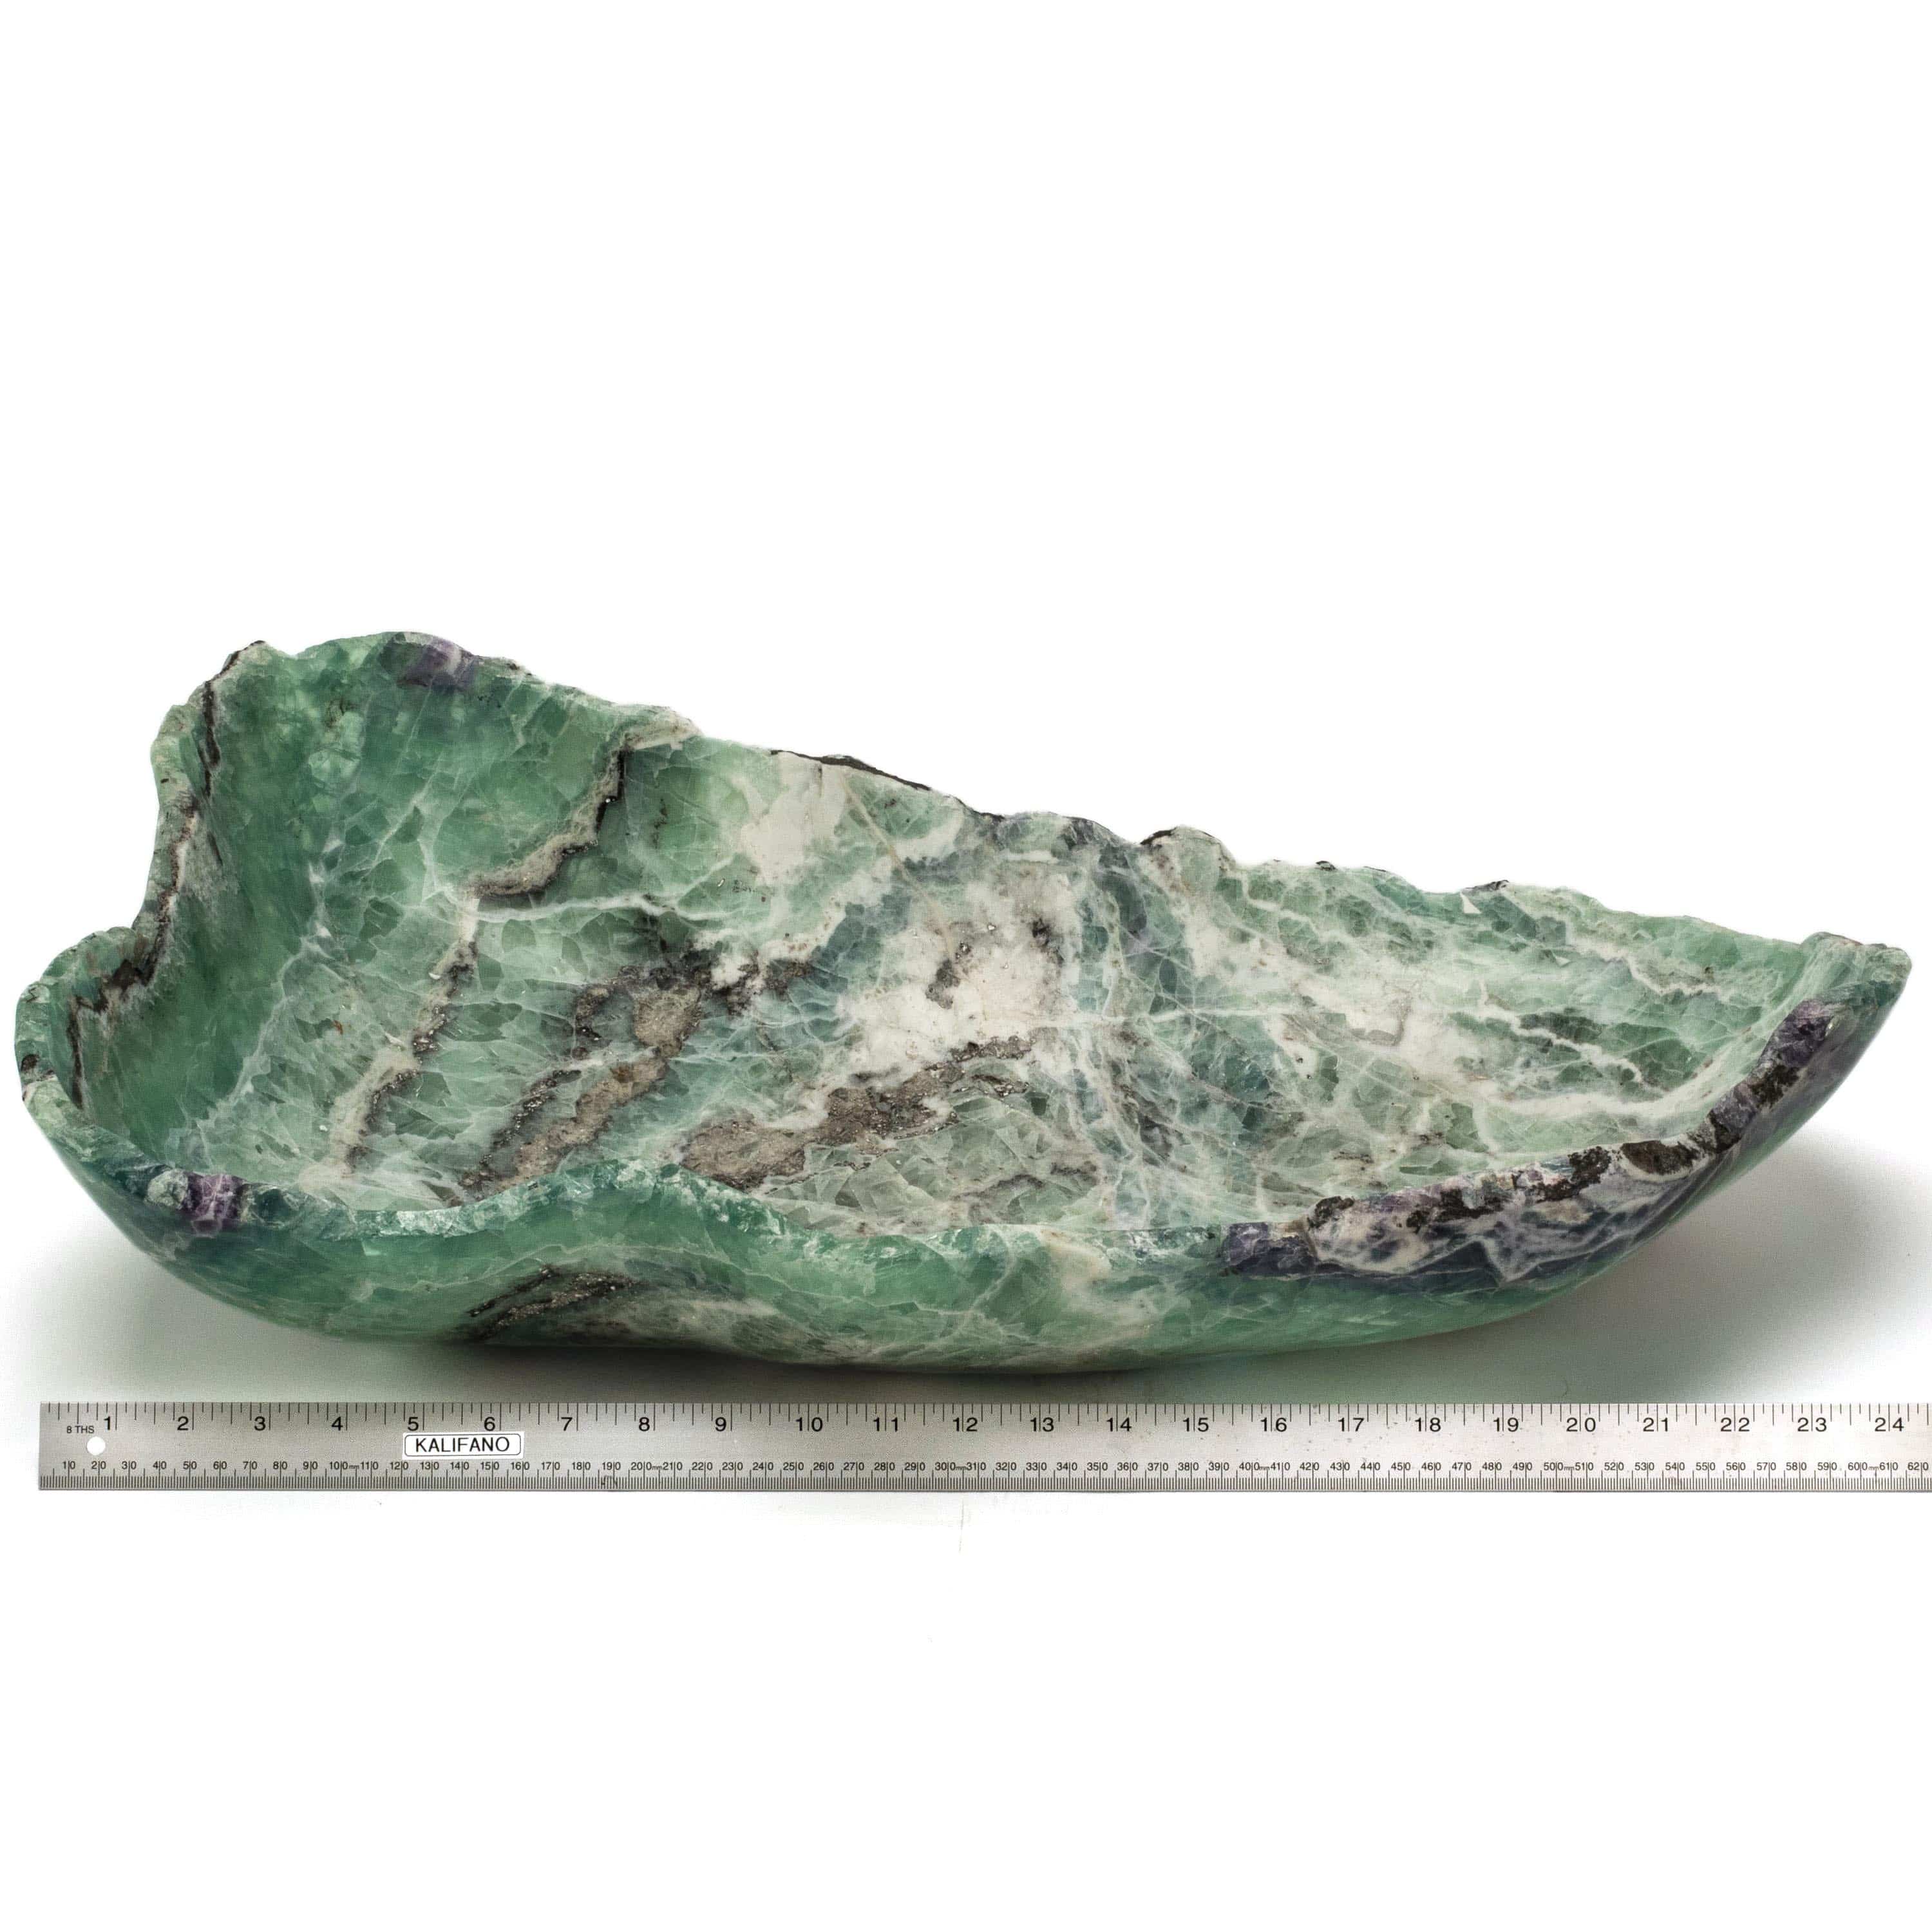 KALIFANO Gemstone Bowls Natural Green Fluorite Bowl 25" BFL10000.002